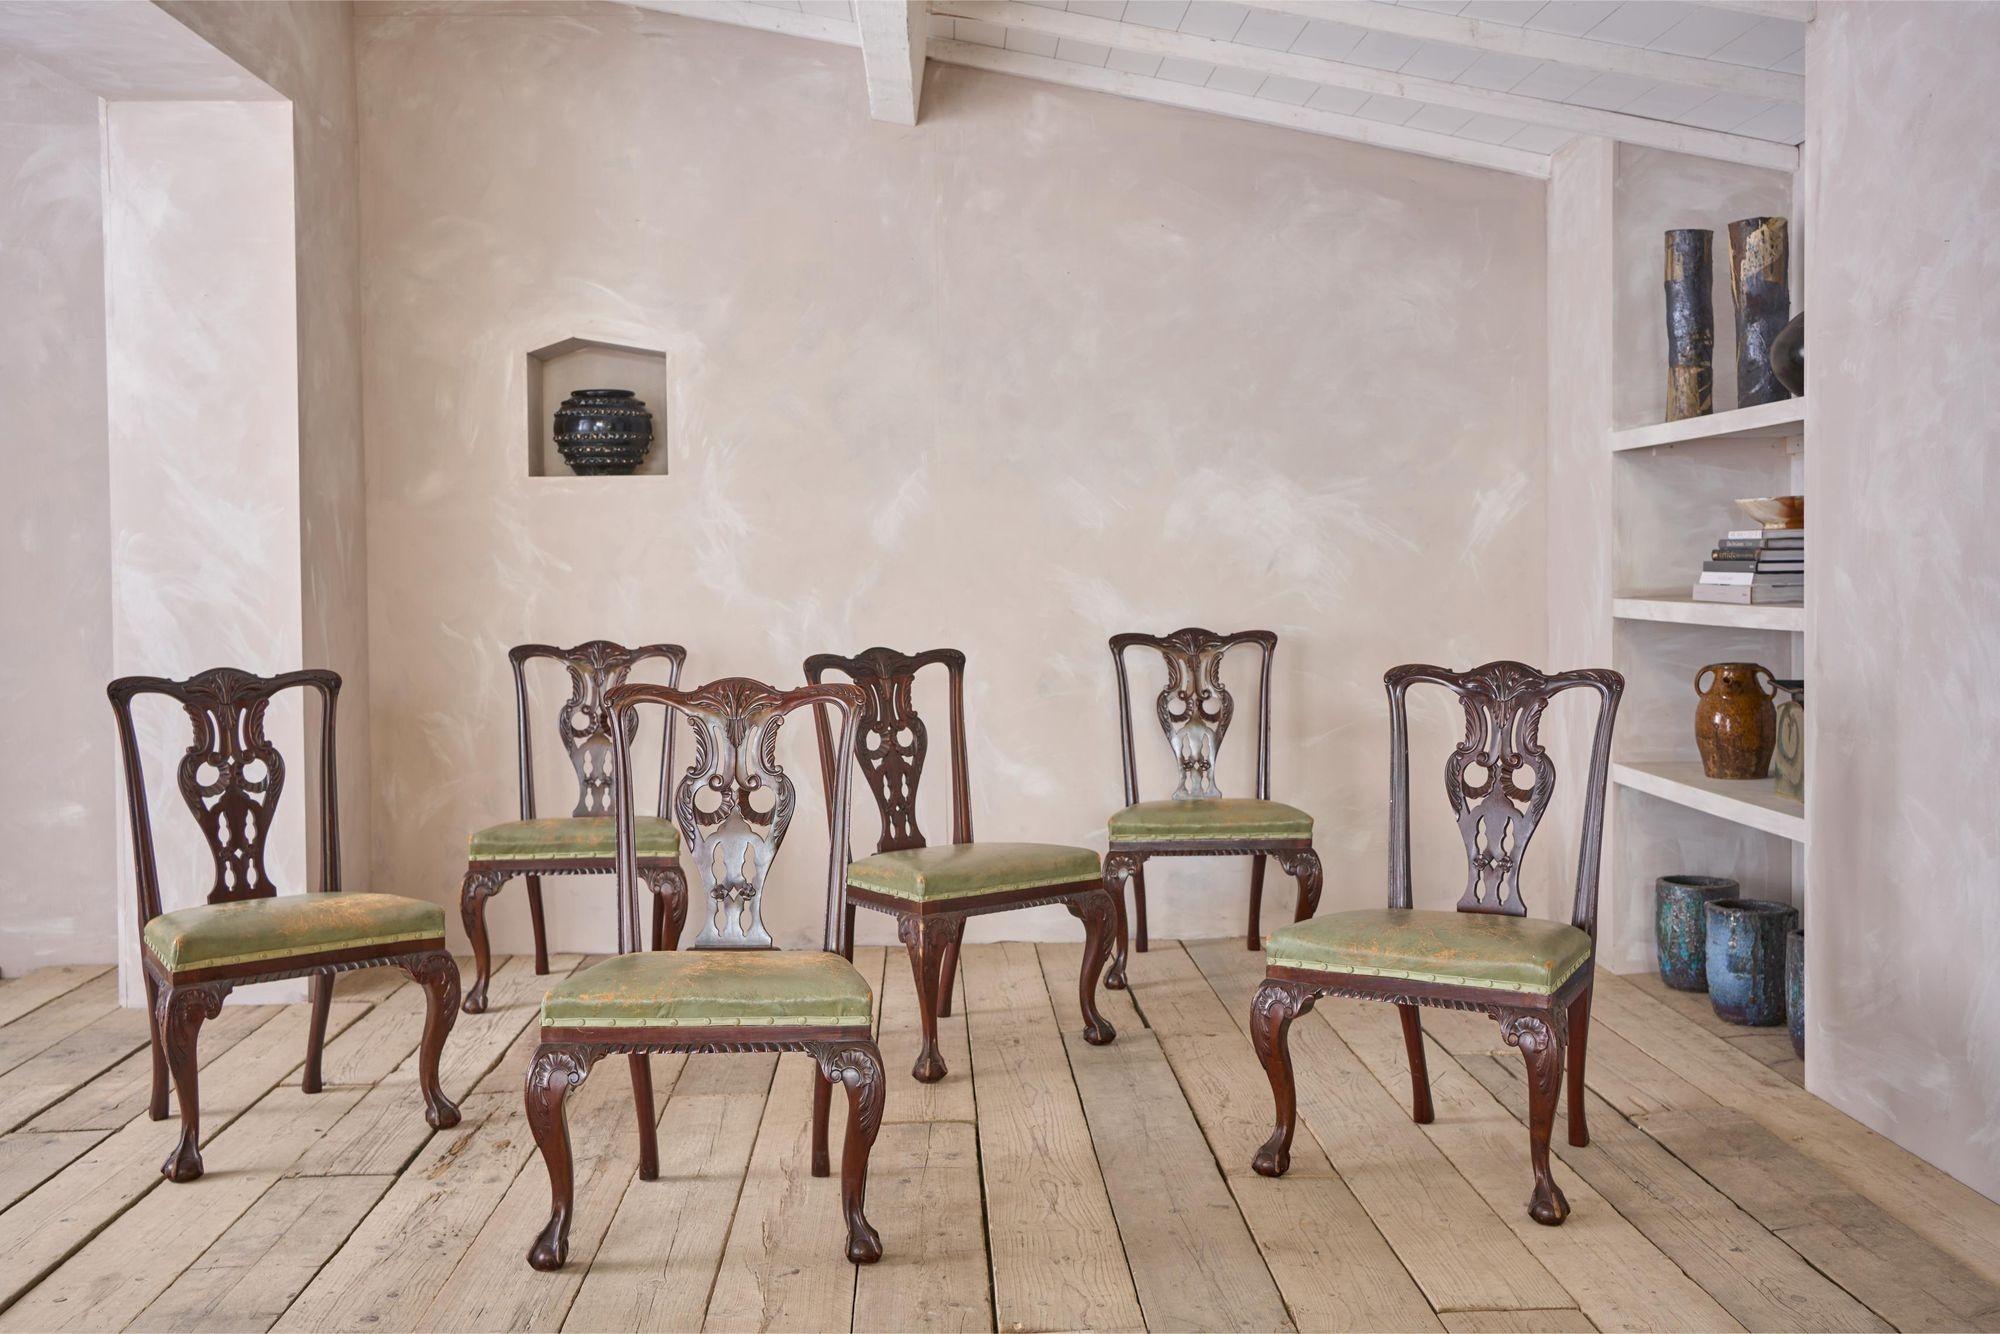 Il s'agit d'un fabuleux ensemble de chaises de salle à manger A.I.C. C.1900. Fabriqué en acajou, il est de style géorgien. Les détails sculptés sont très joliment réalisés et confèrent à ces véhicules un design extrêmement impressionnant qui est